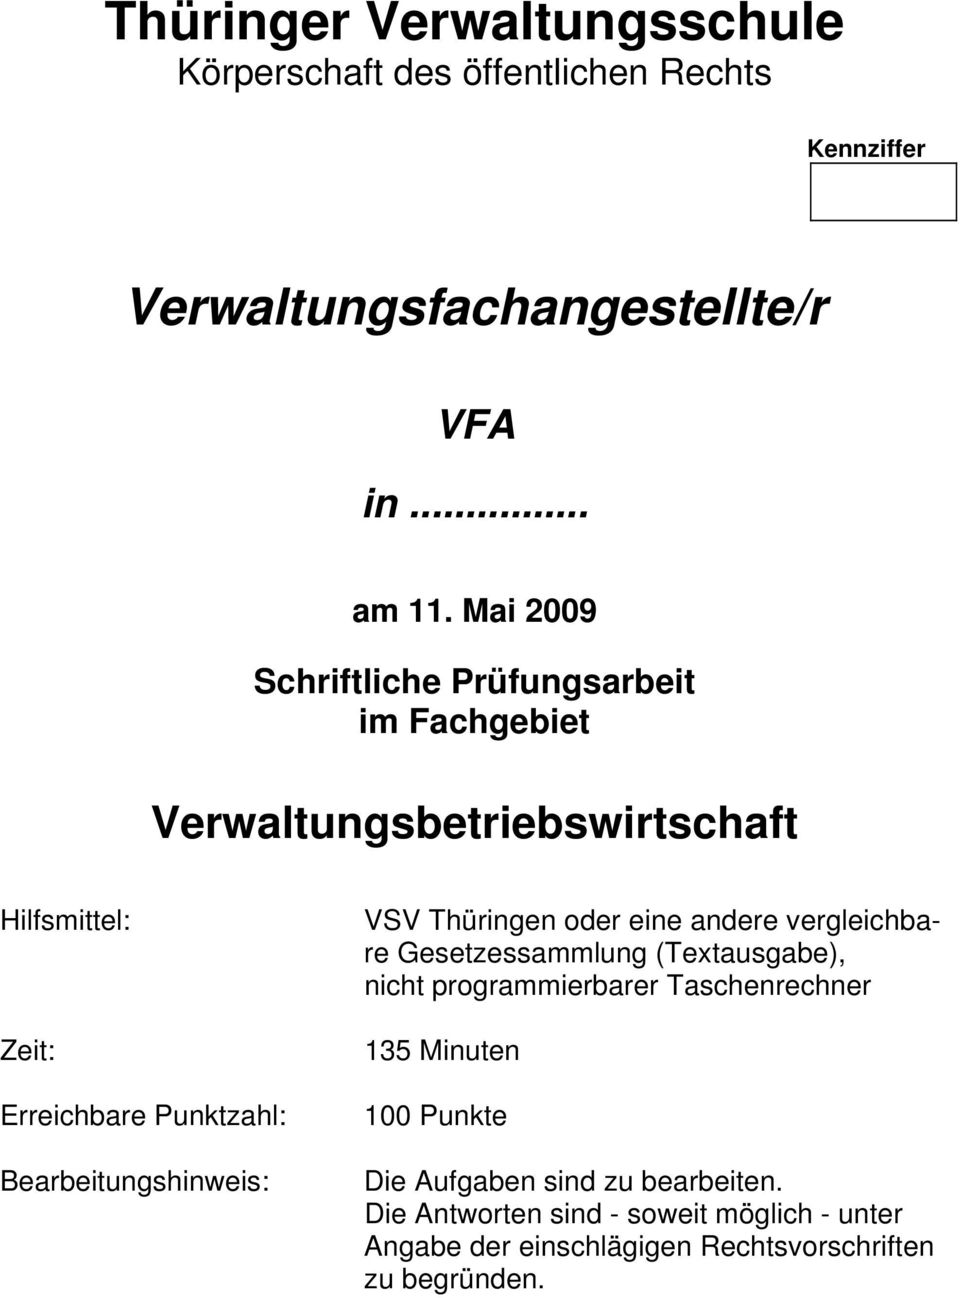 Bearbeitungshinweis: VSV Thüringen oder eine andere vergleichbare Gesetzessammlung (Textausgabe), nicht programmierbarer